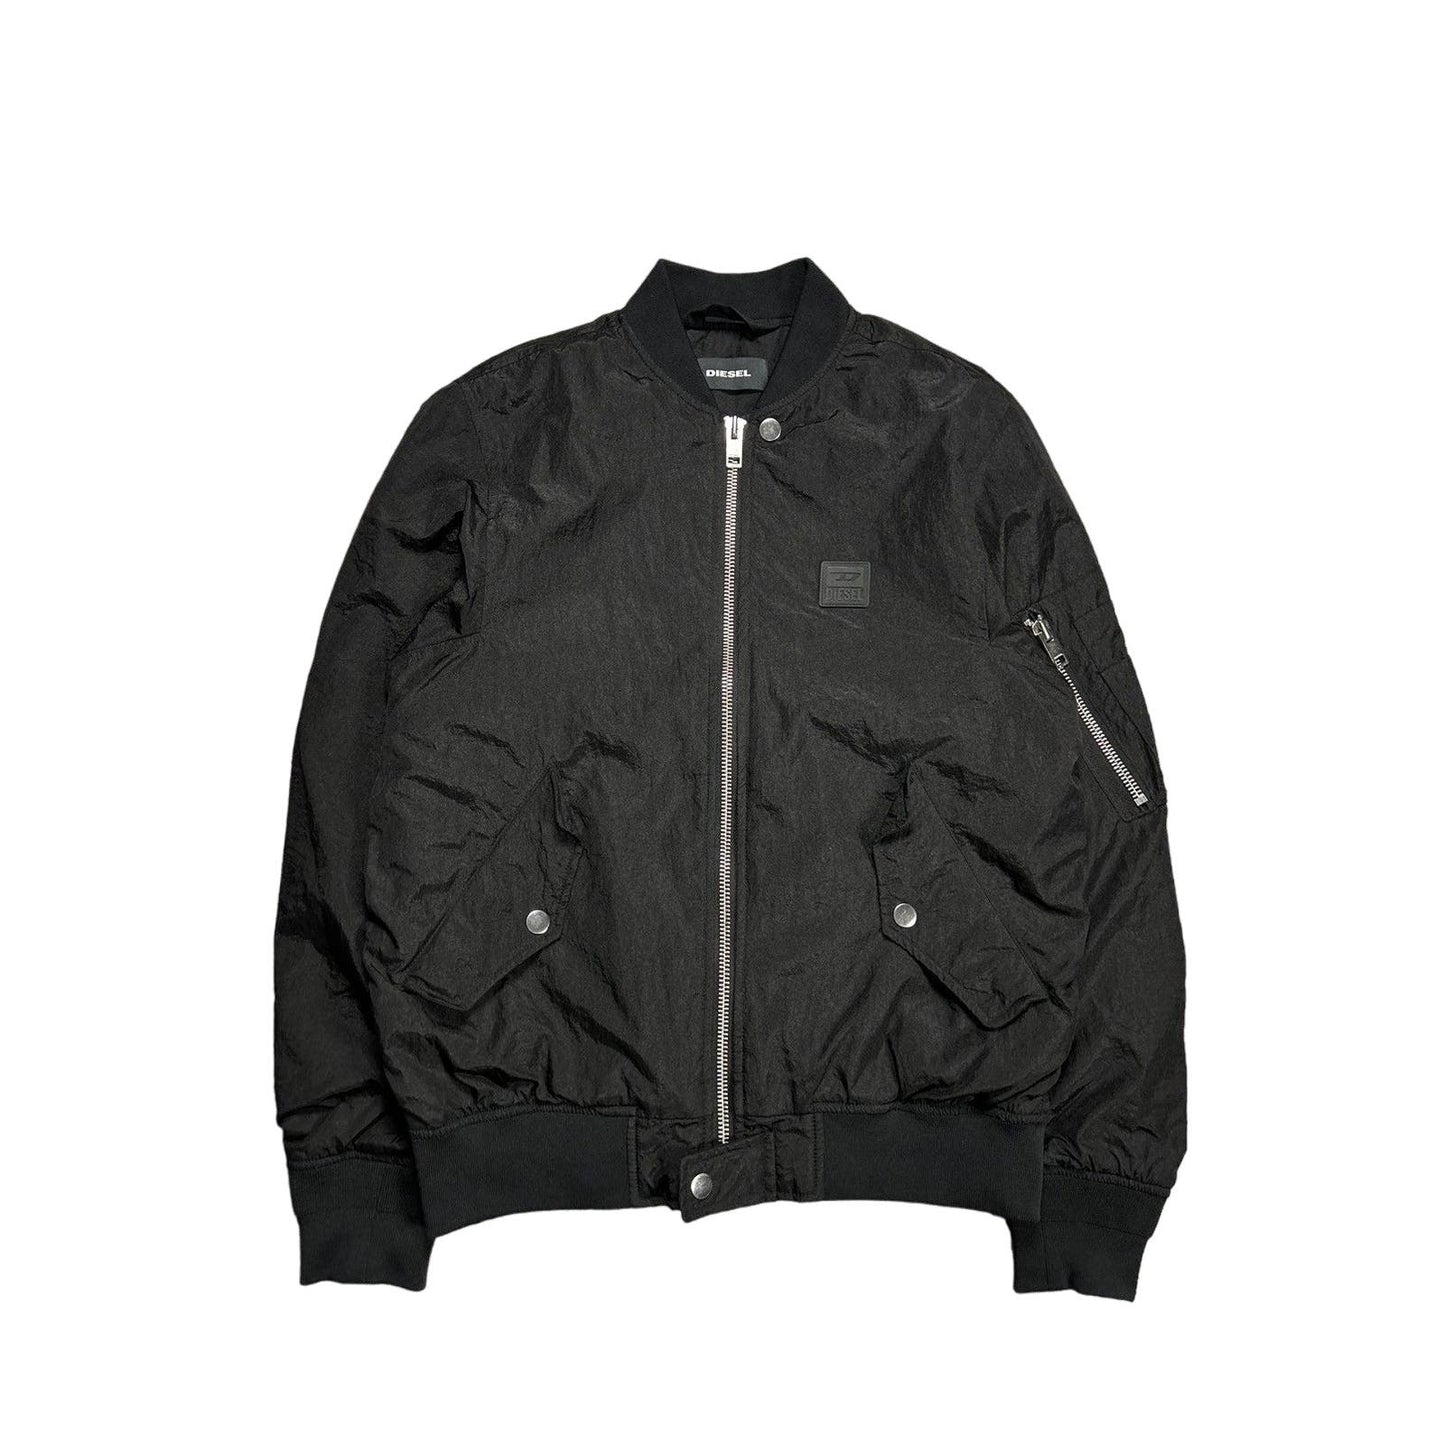 Diesel nylon jacket black bomber vintage Y2K